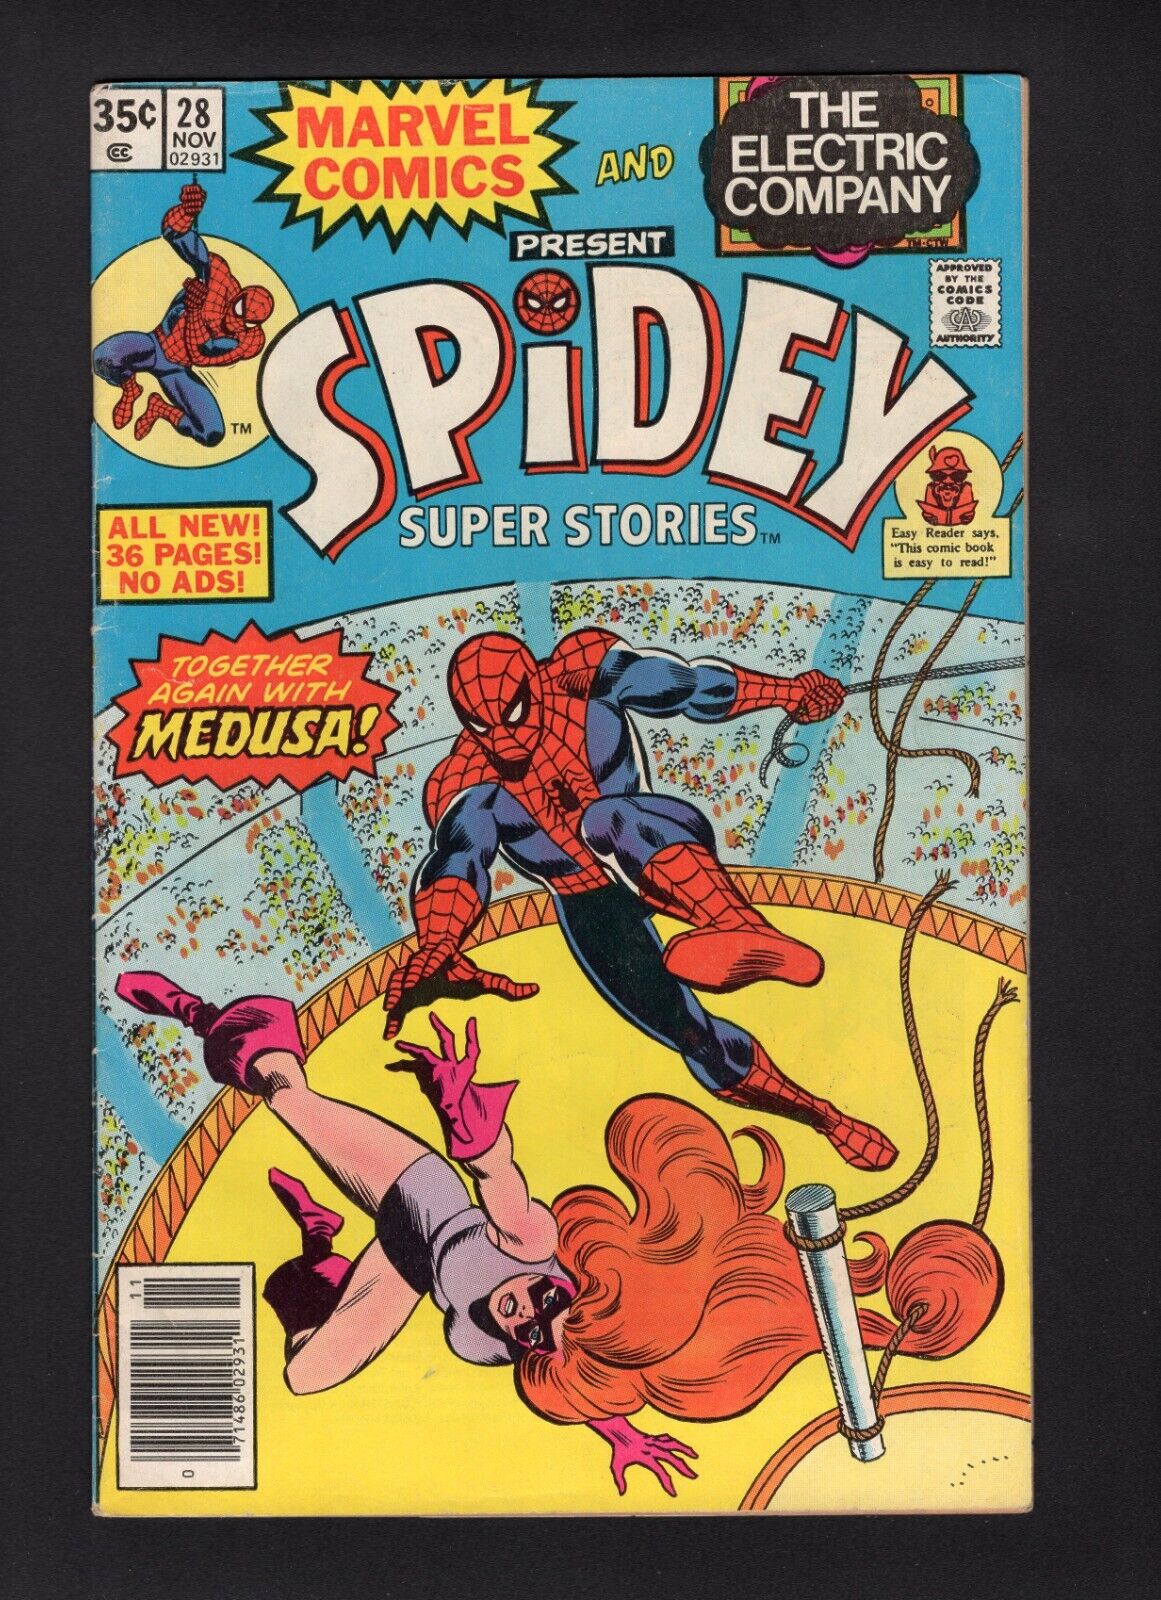 Spidey Super Stories #28 Vol. 1 Marvel Comics \'77 VG